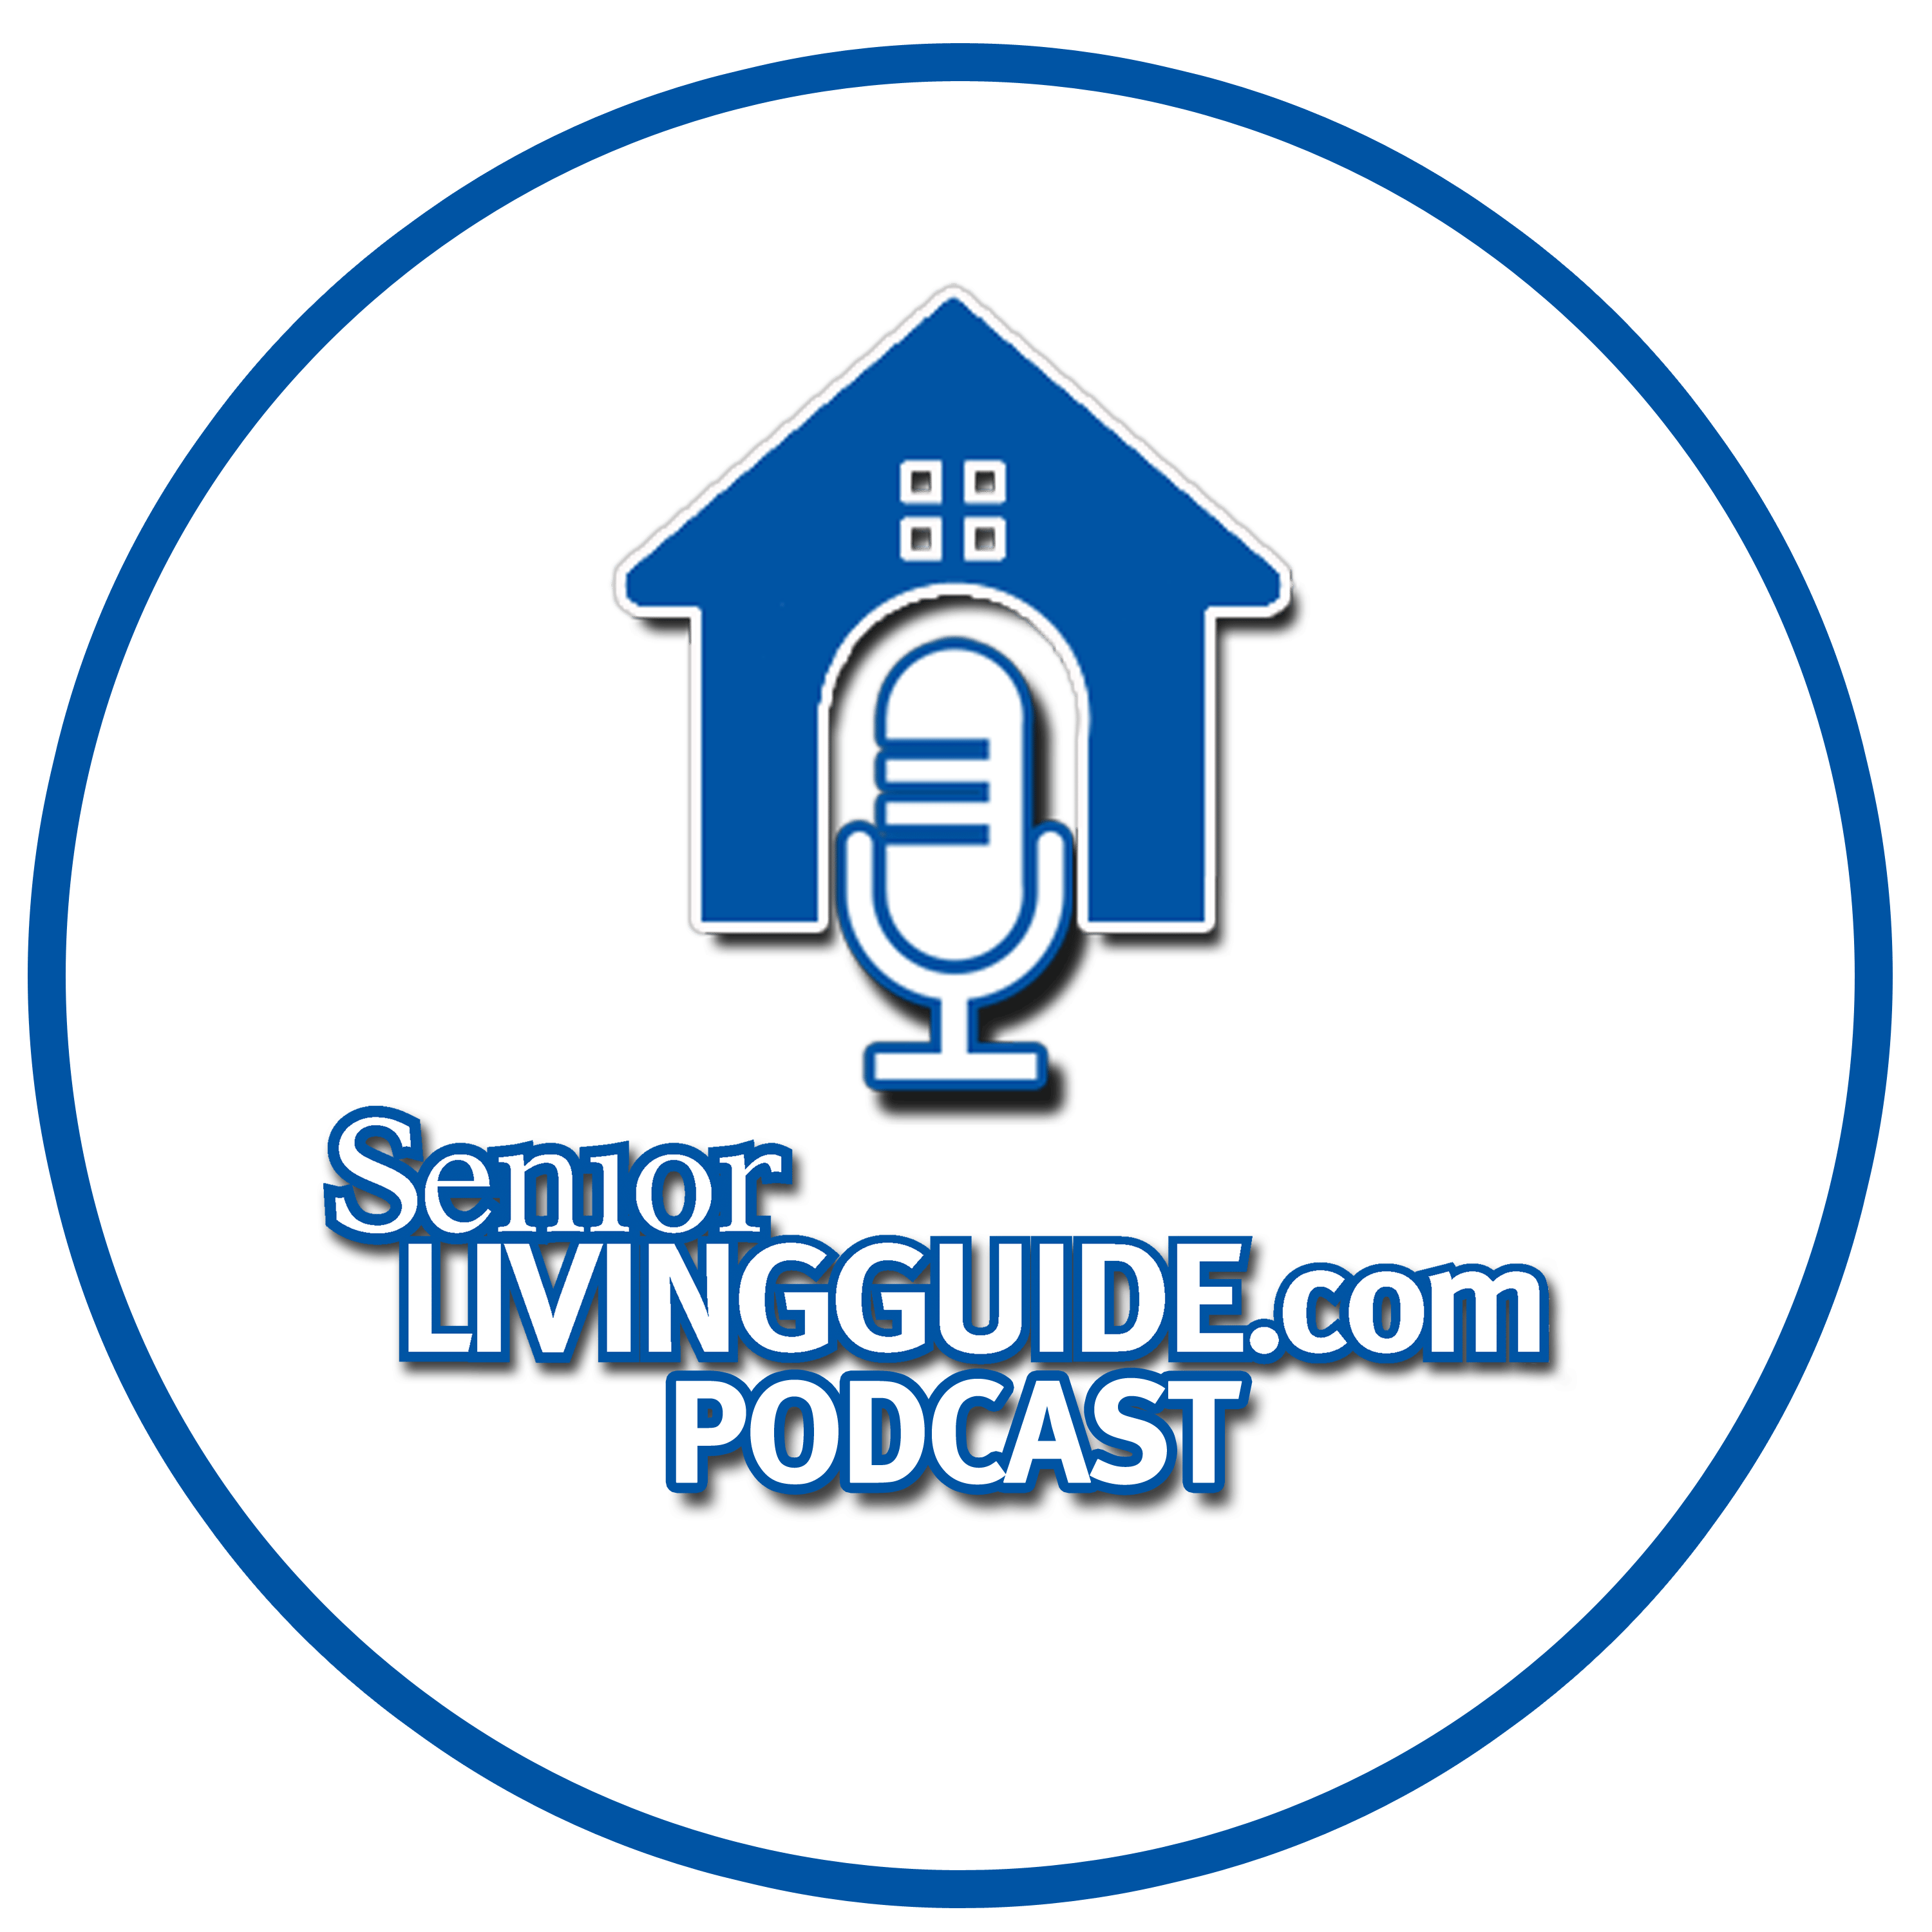 SeniorLivingGuide.com Podcast Logo